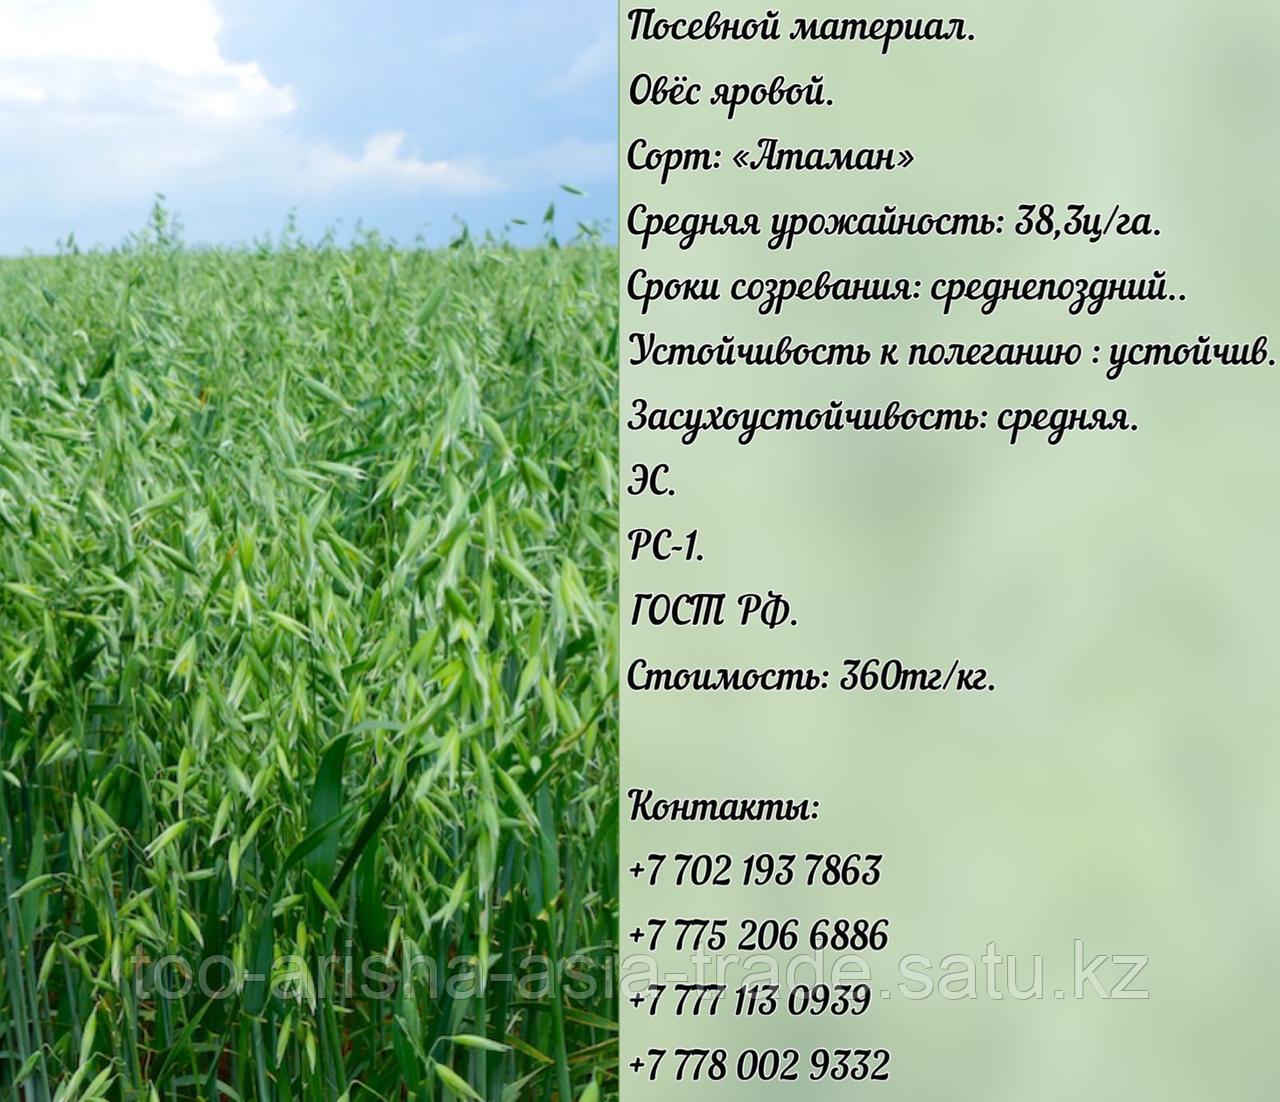 Семена овес яровой "Атаман" ЭС, РС-1 Россия